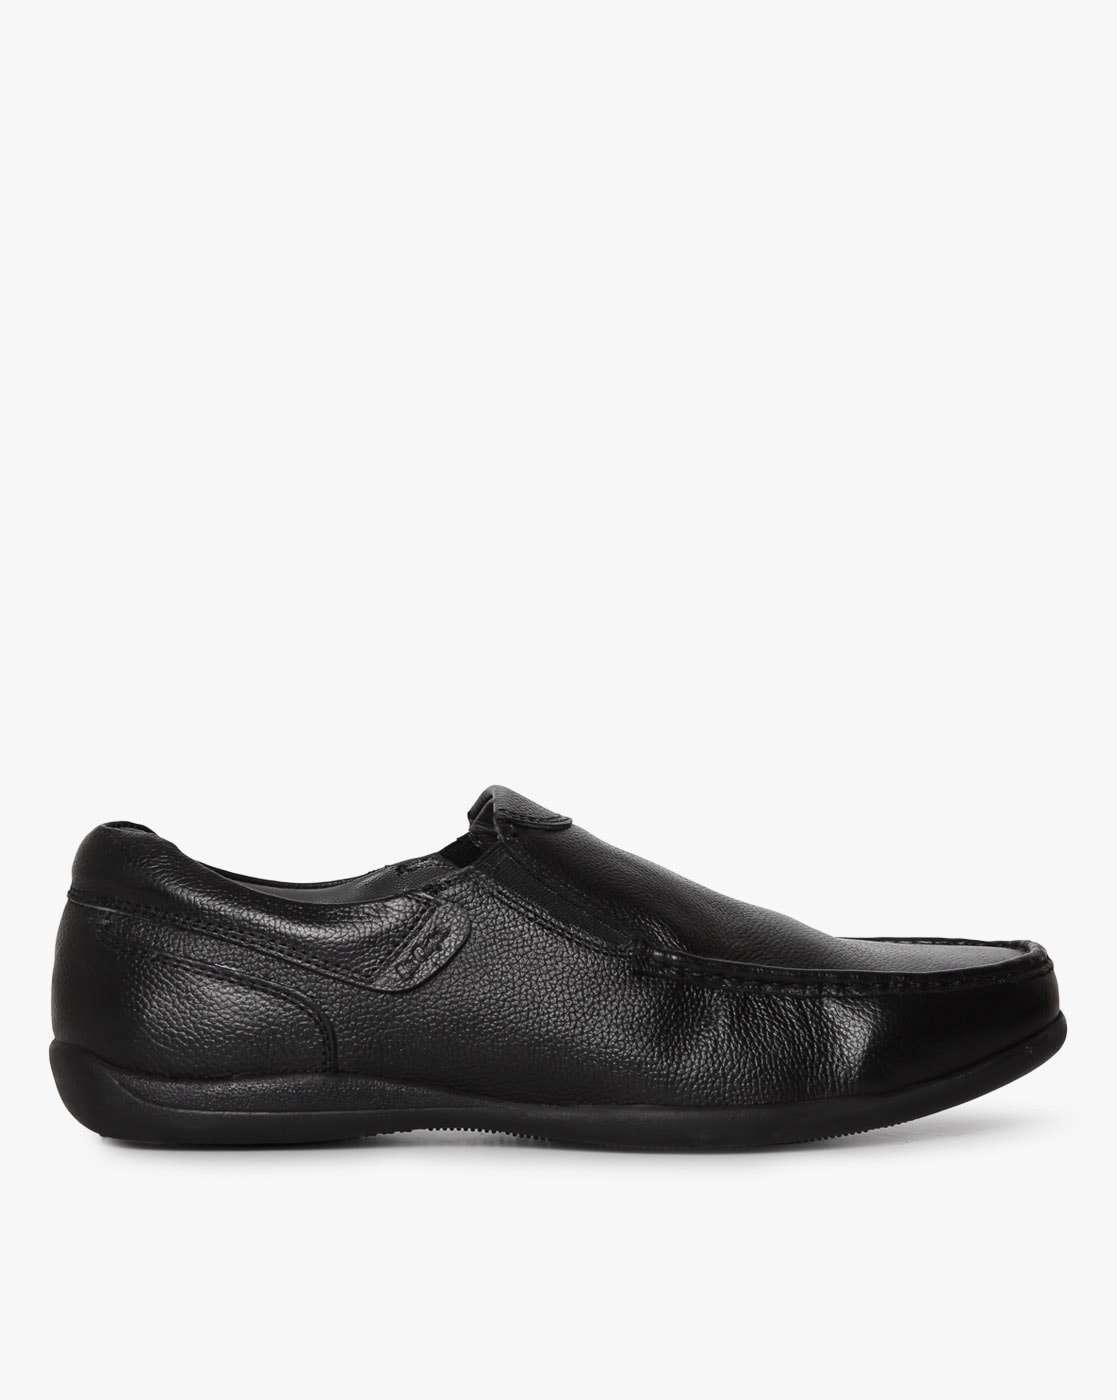 lee cooper formal shoe